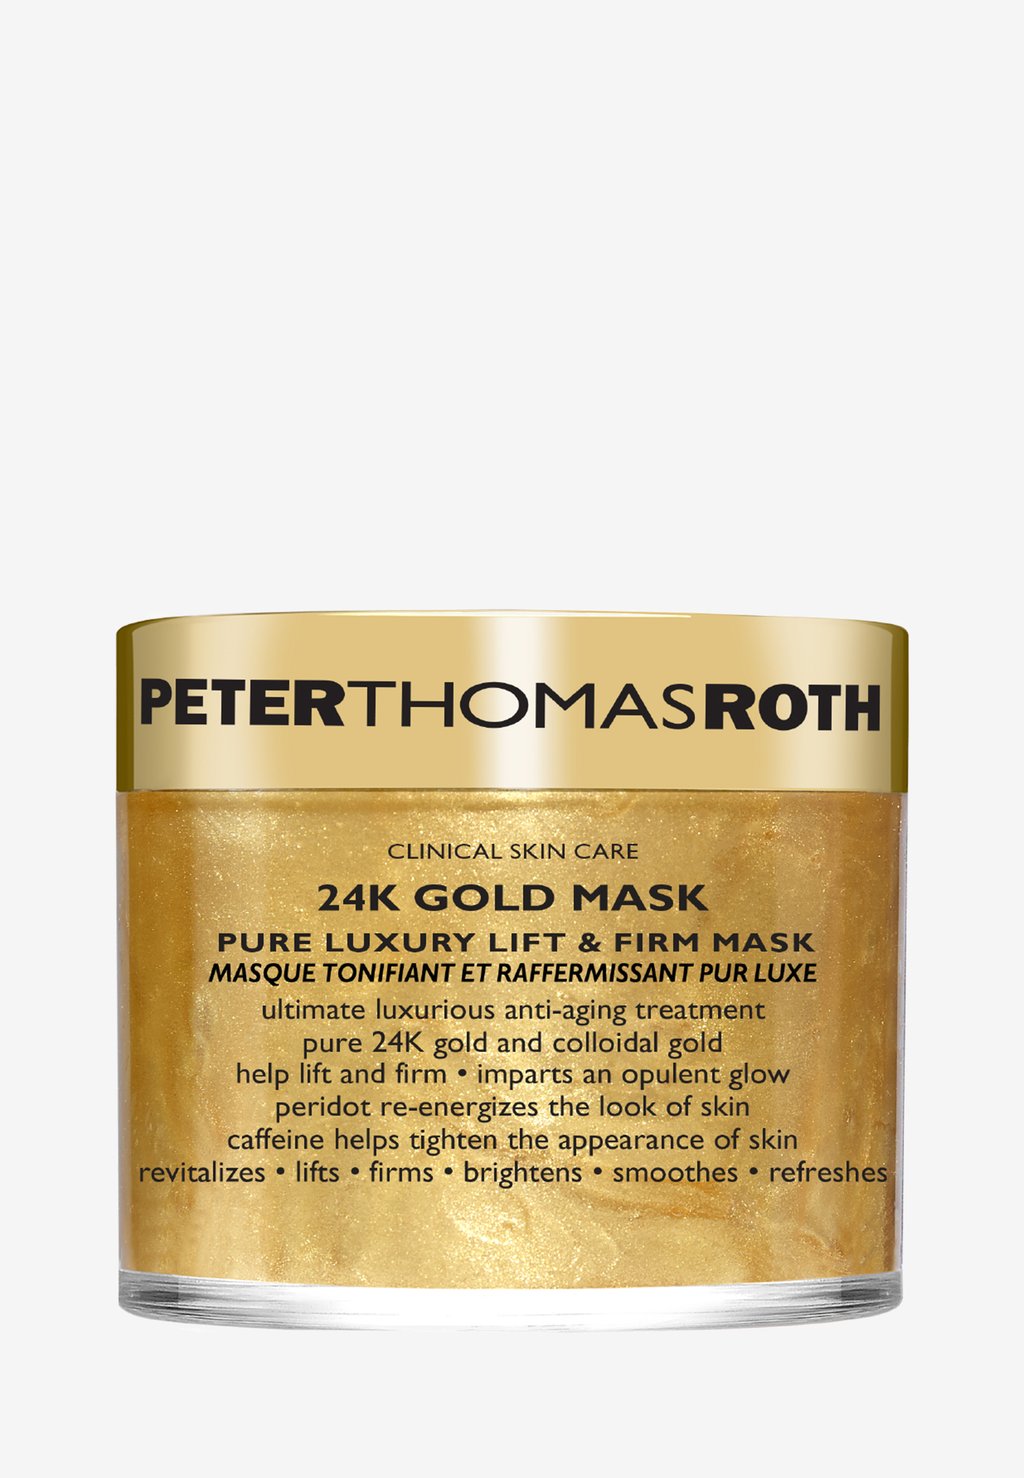 Маска для лица 24K Gold Mask Peter Thomas Roth